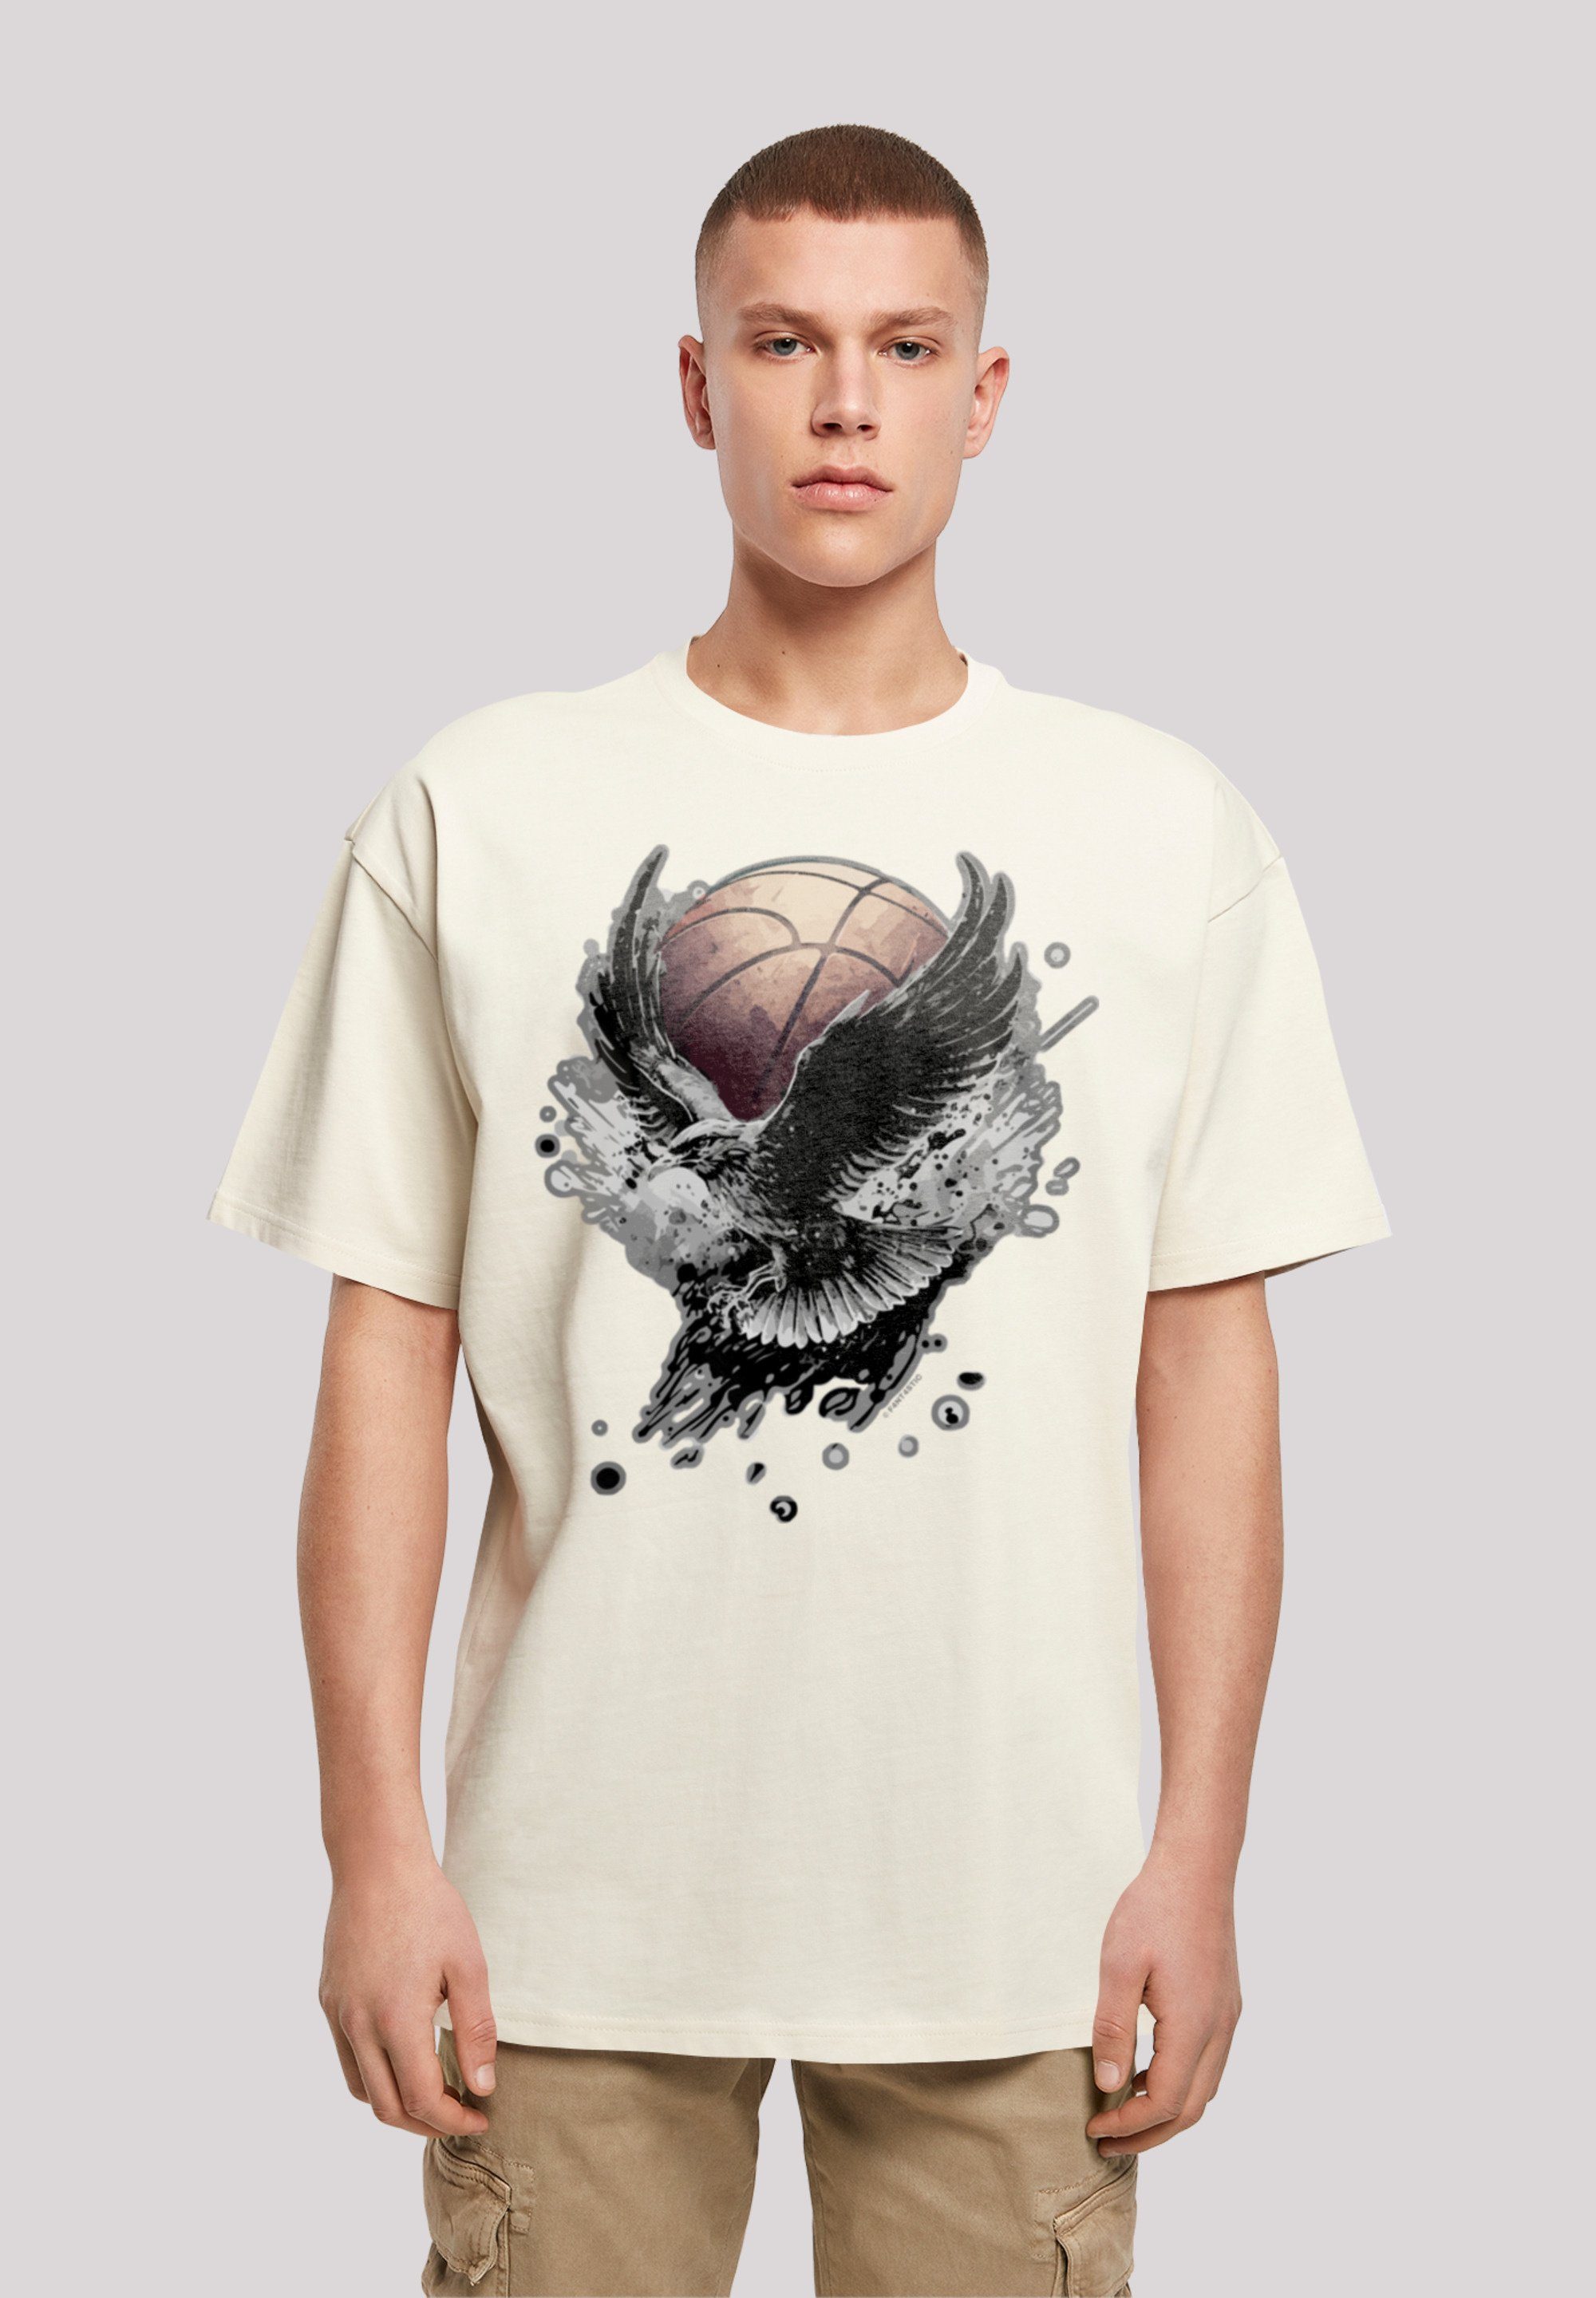 Größe kleiner T-Shirt Basketball Adler F4NT4STIC weit aus, bestellen Print, Fällt eine bitte